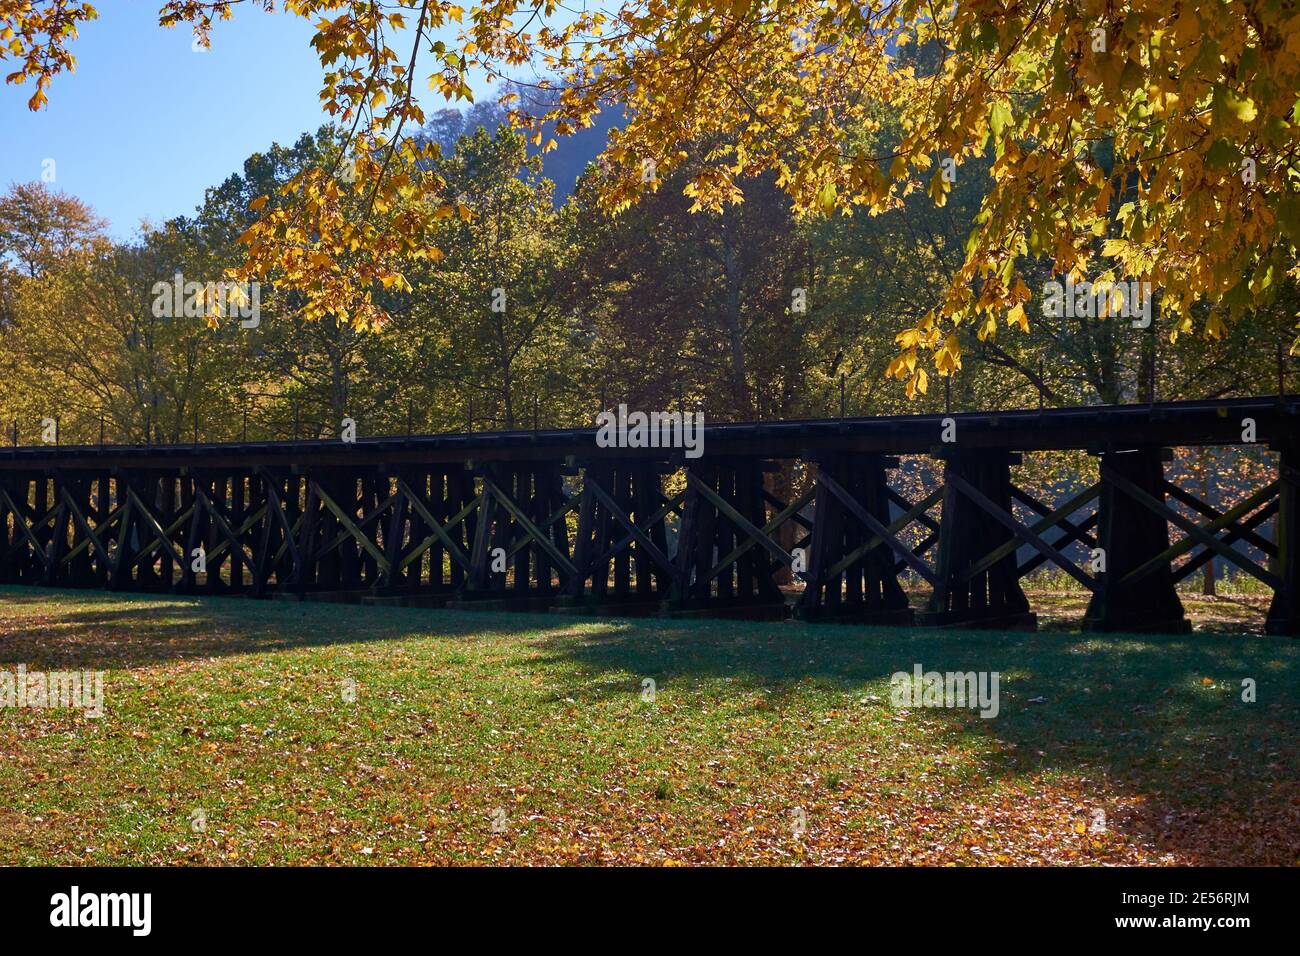 La piste de chemin de fer en bois surélevée pour l'ancienne route Winchester & Potomac, maintenant CSX. En automne, à Harpers Ferry, Virginie-Occidentale. Banque D'Images